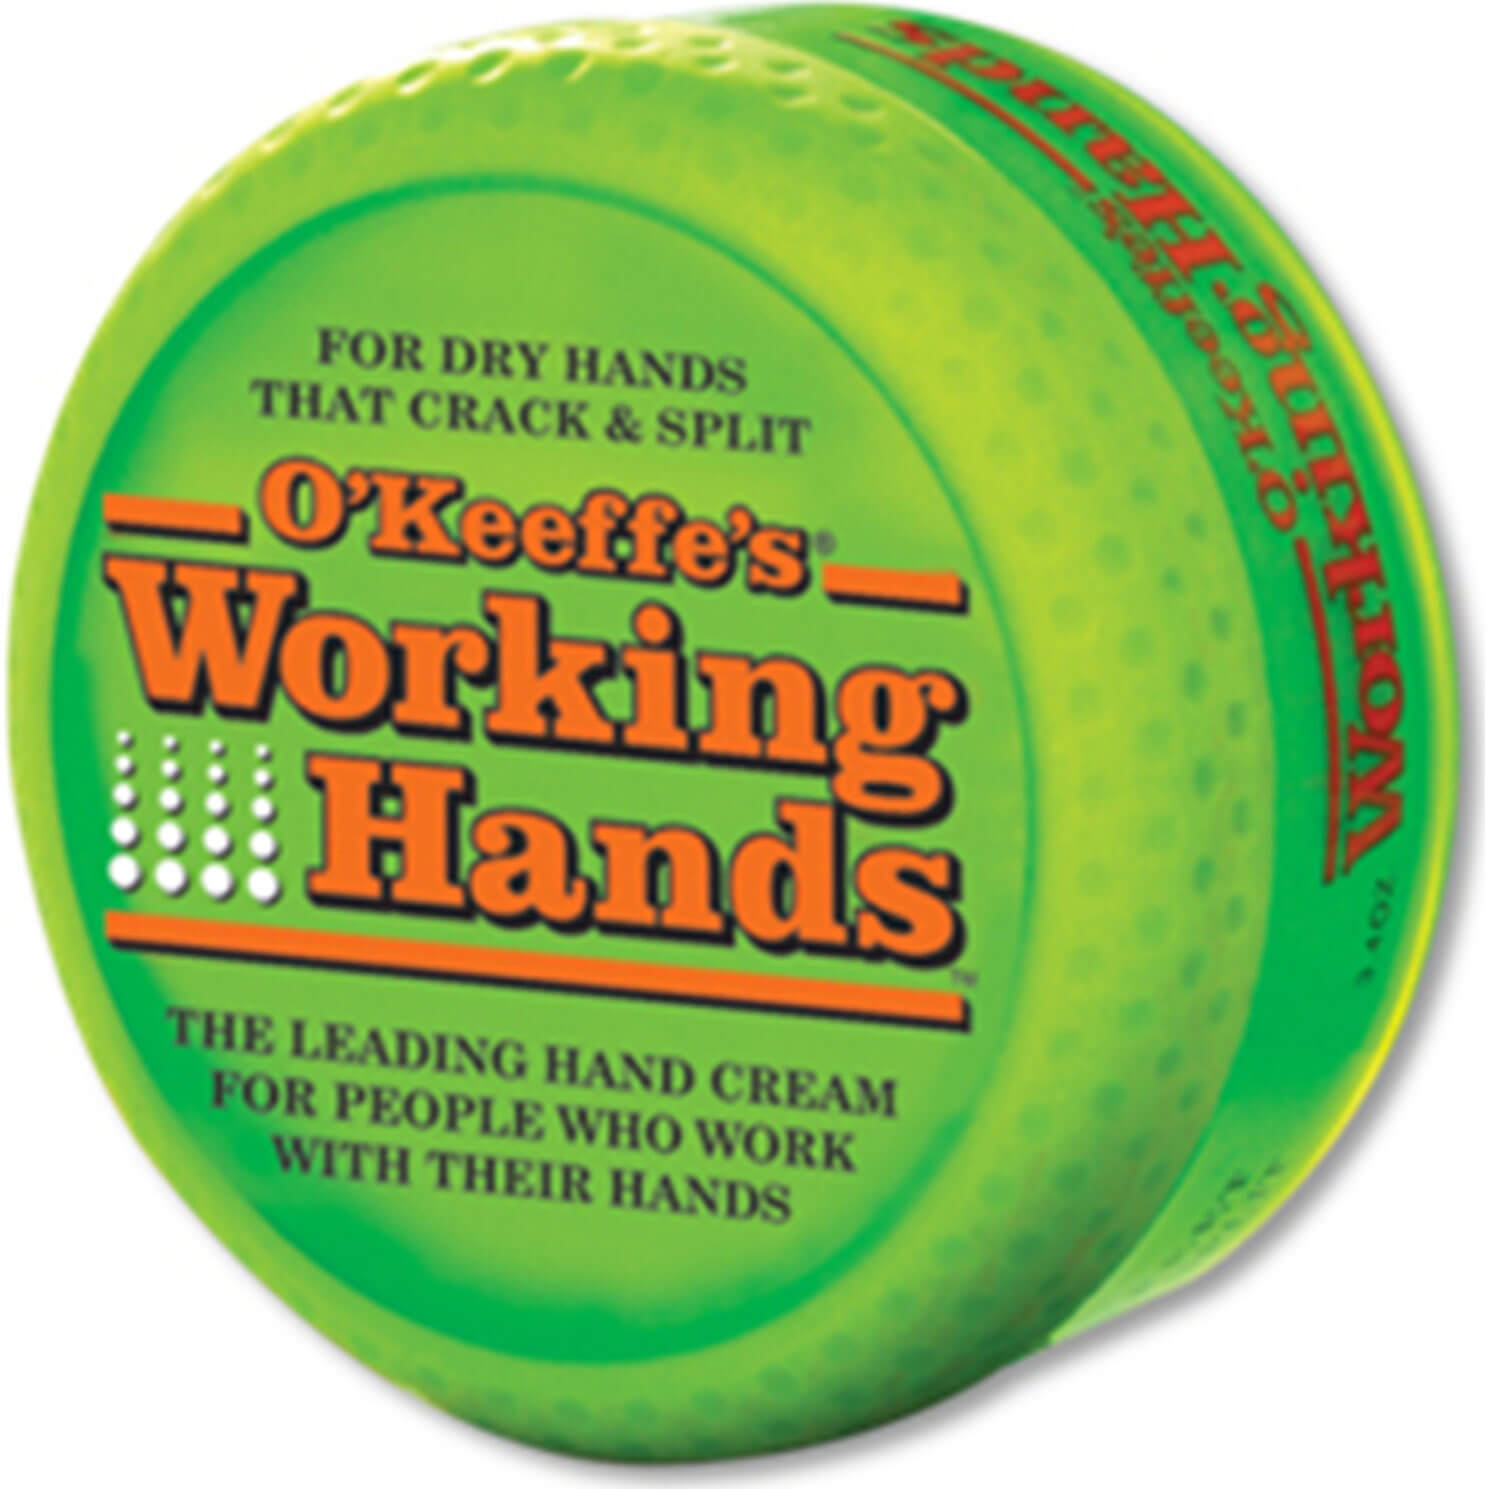 OKeefes Working Hands Hand Cream